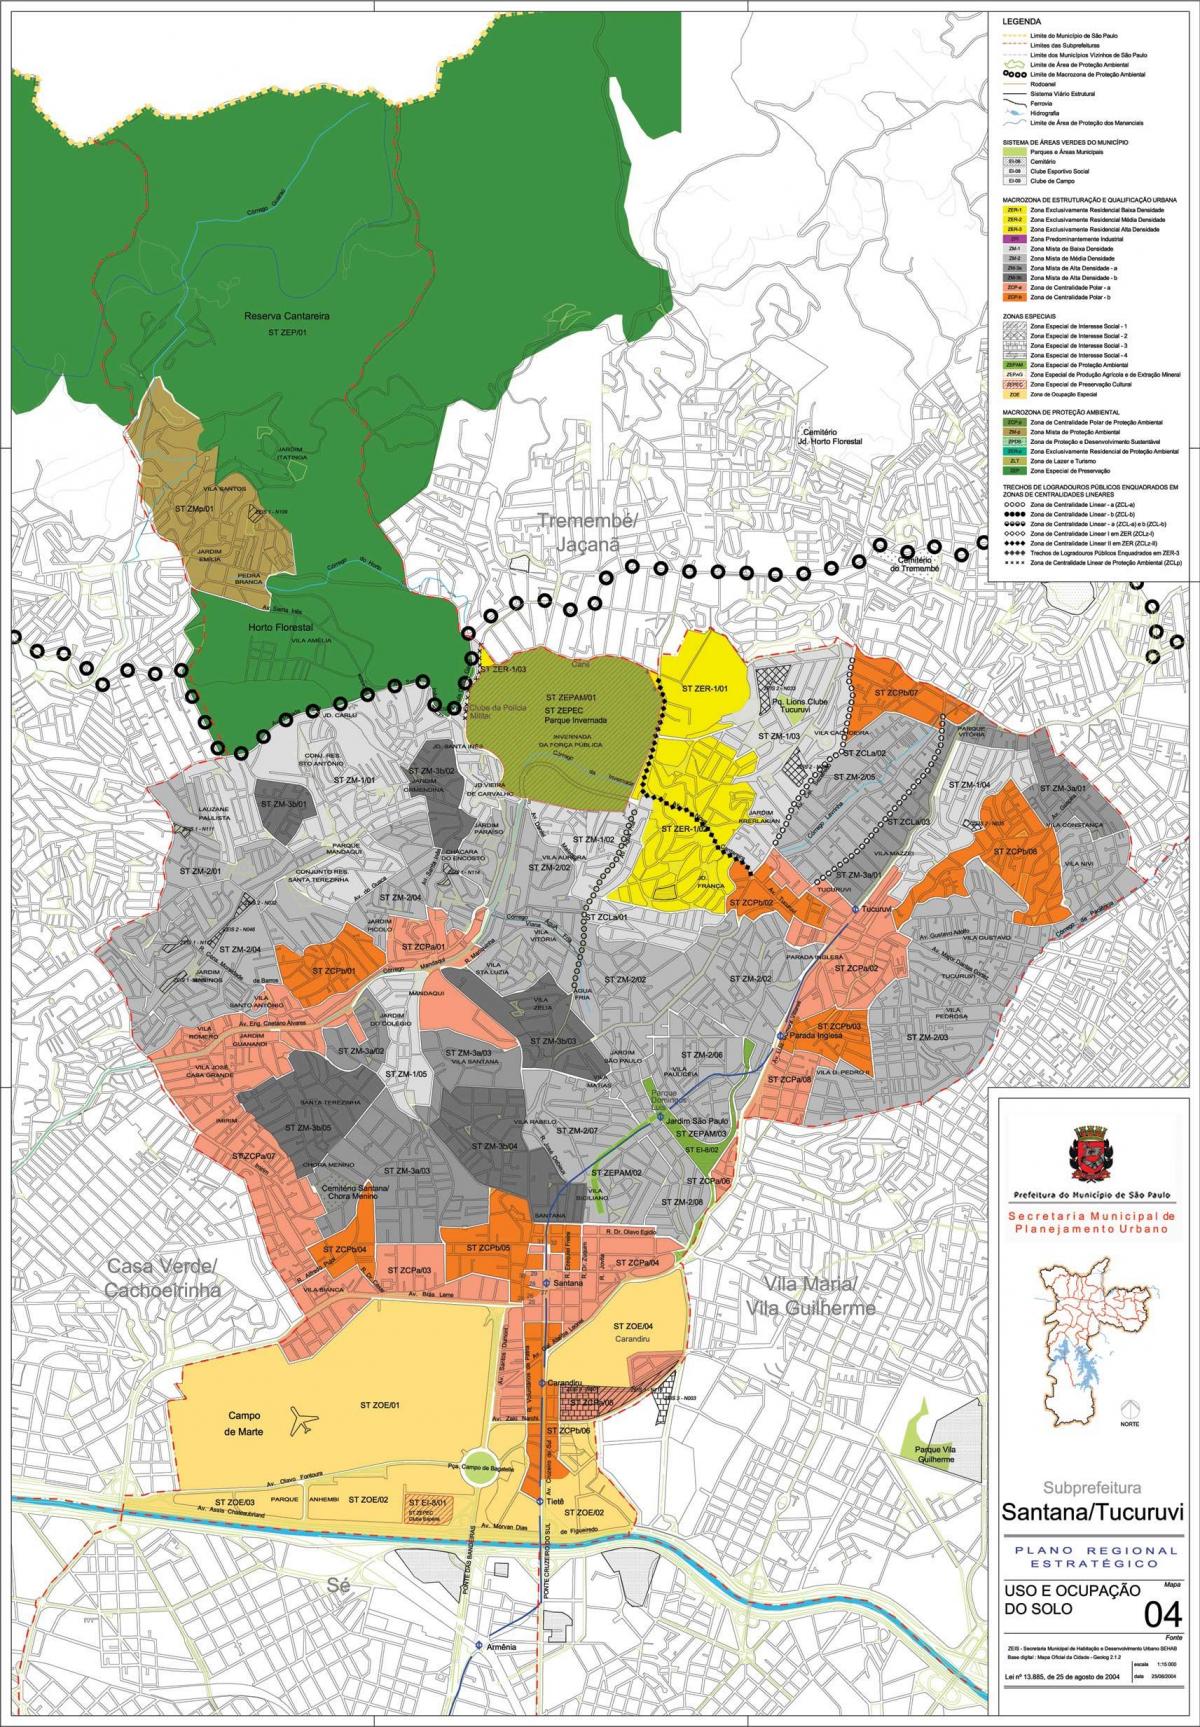 Peta dari Santana Sao Paulo - Pendudukan tanah